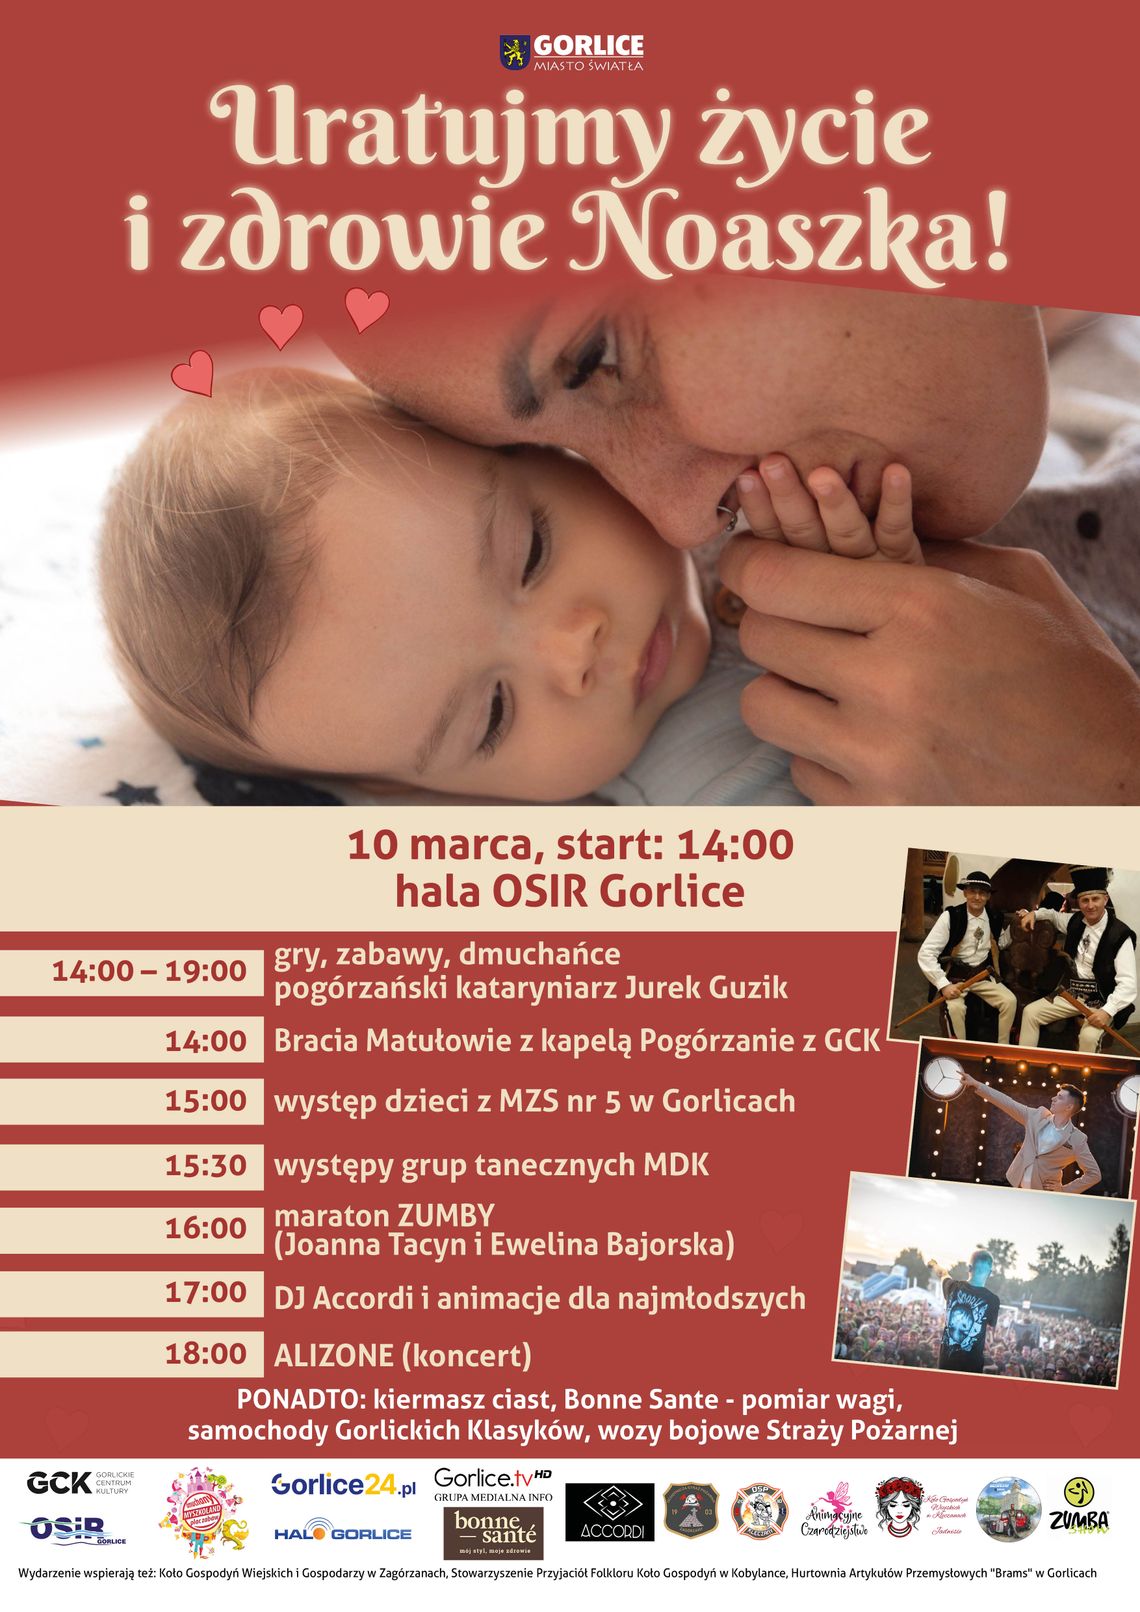 Uratujmy życie i zdrowie Noaszka! | halogorlice.info